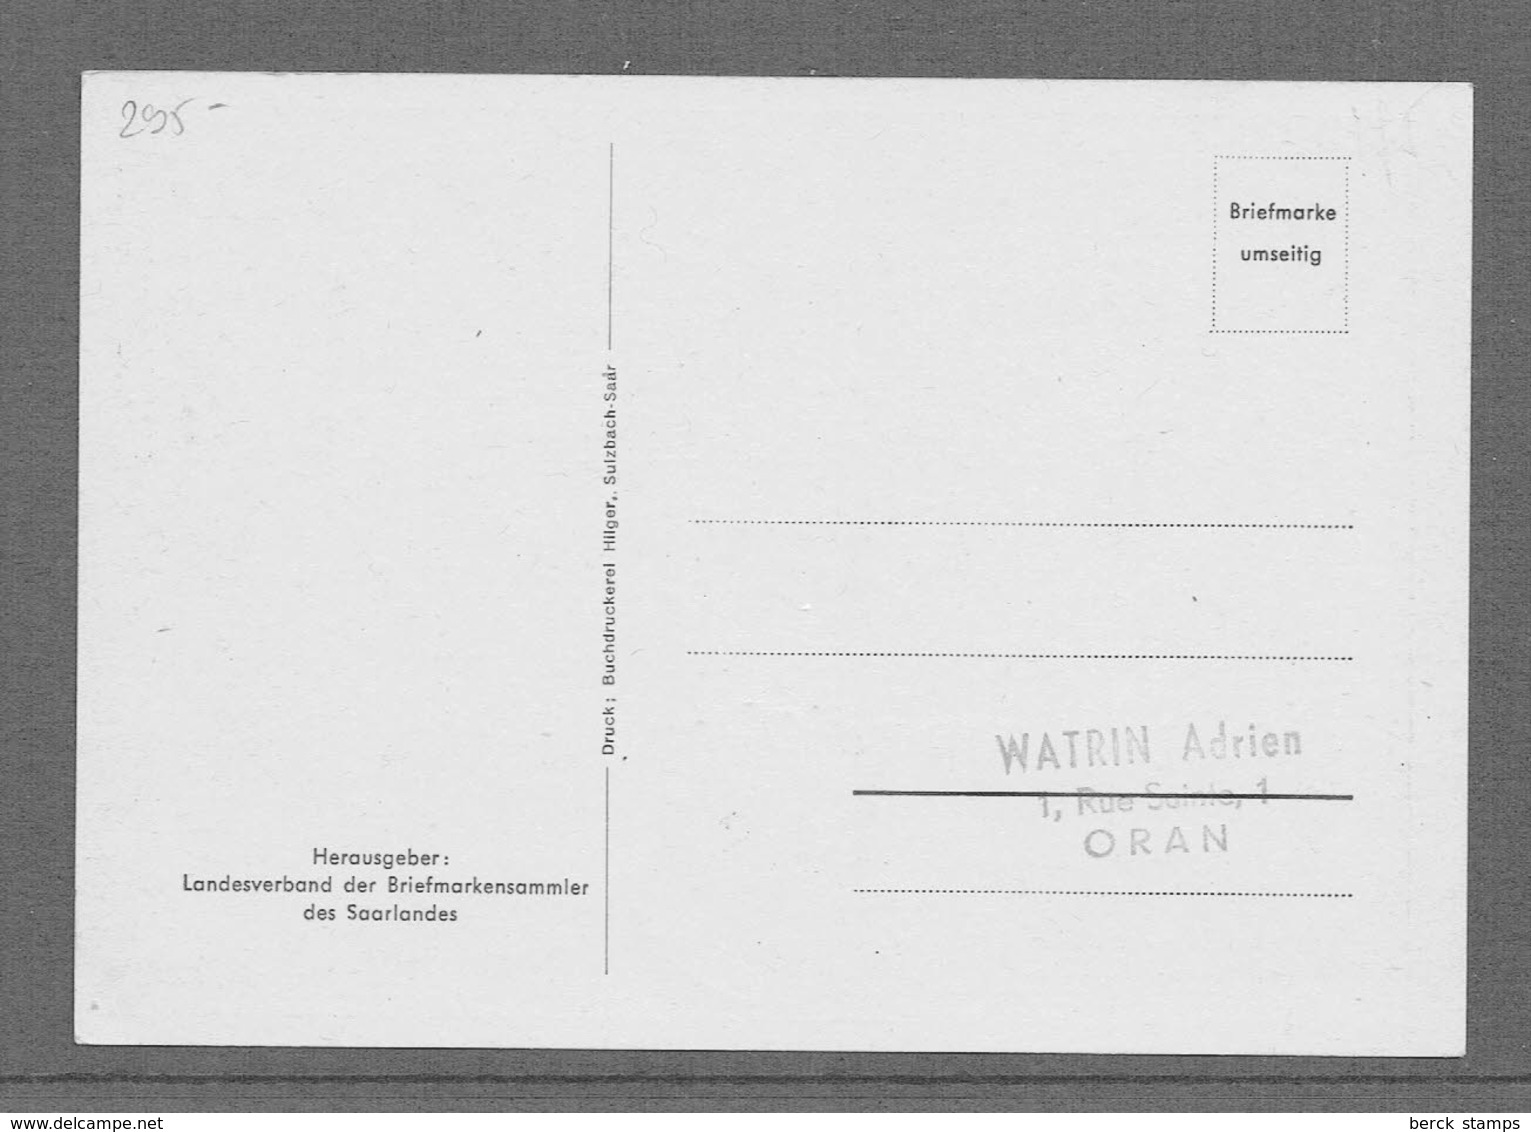 SARRE - N°295 - N°308 - Anniversaire De La Réforme - CALVIN - LUTHER - En Carte Maximum 1951 - Maximum Cards